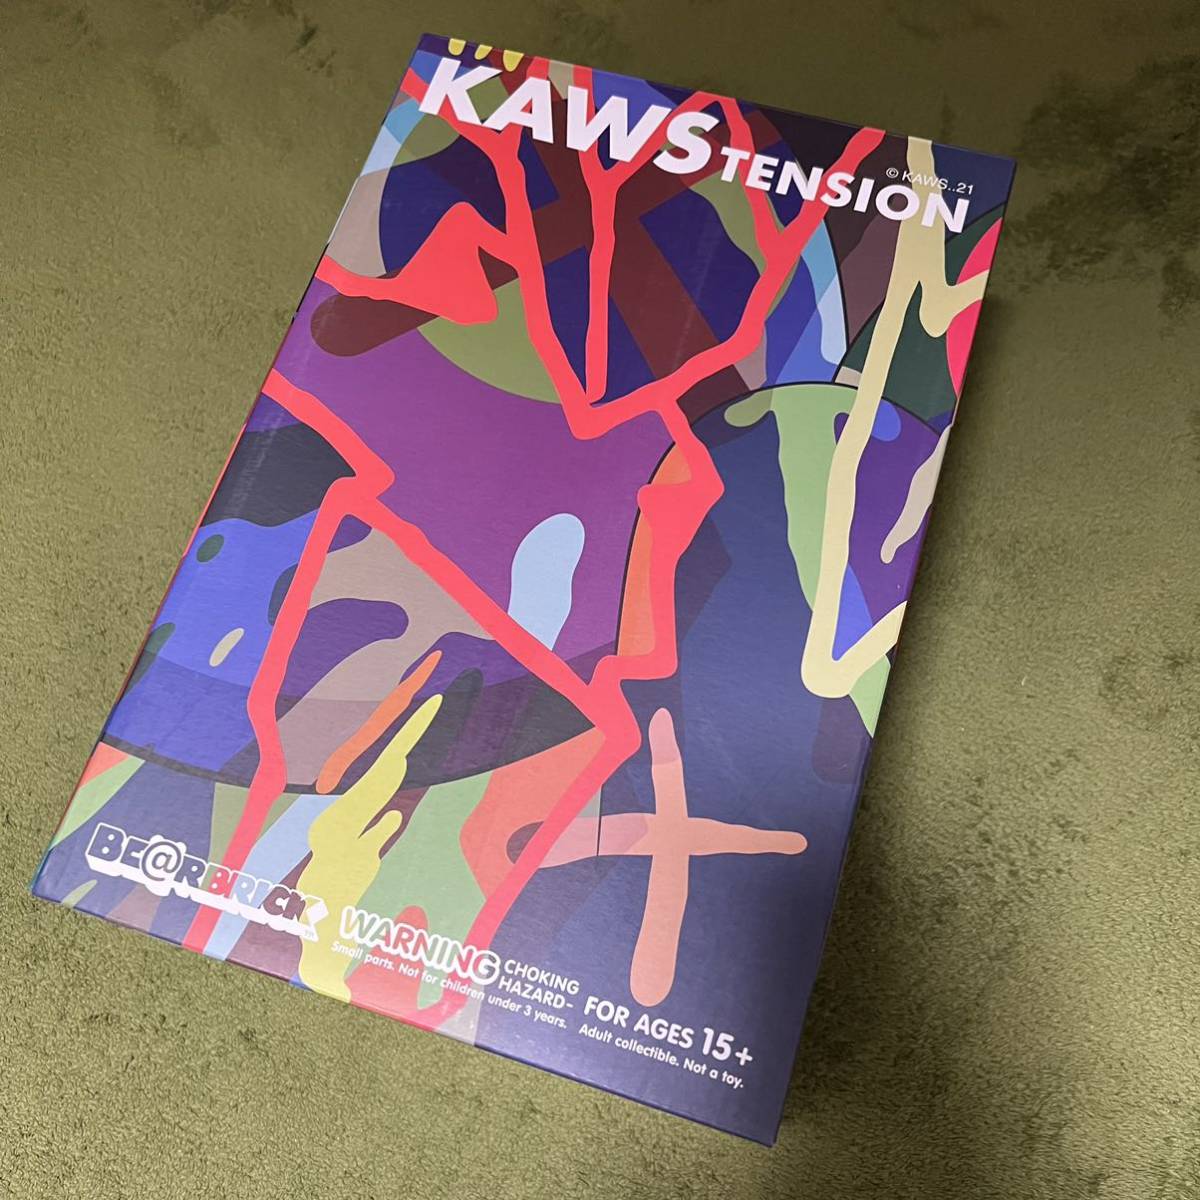 新品未開封 KAWS TOKYO FIRST BE@RBRICK KAWS TENSION 100% & 400% ベアブリック カウズ MEDICOM TOY メディコムトイ